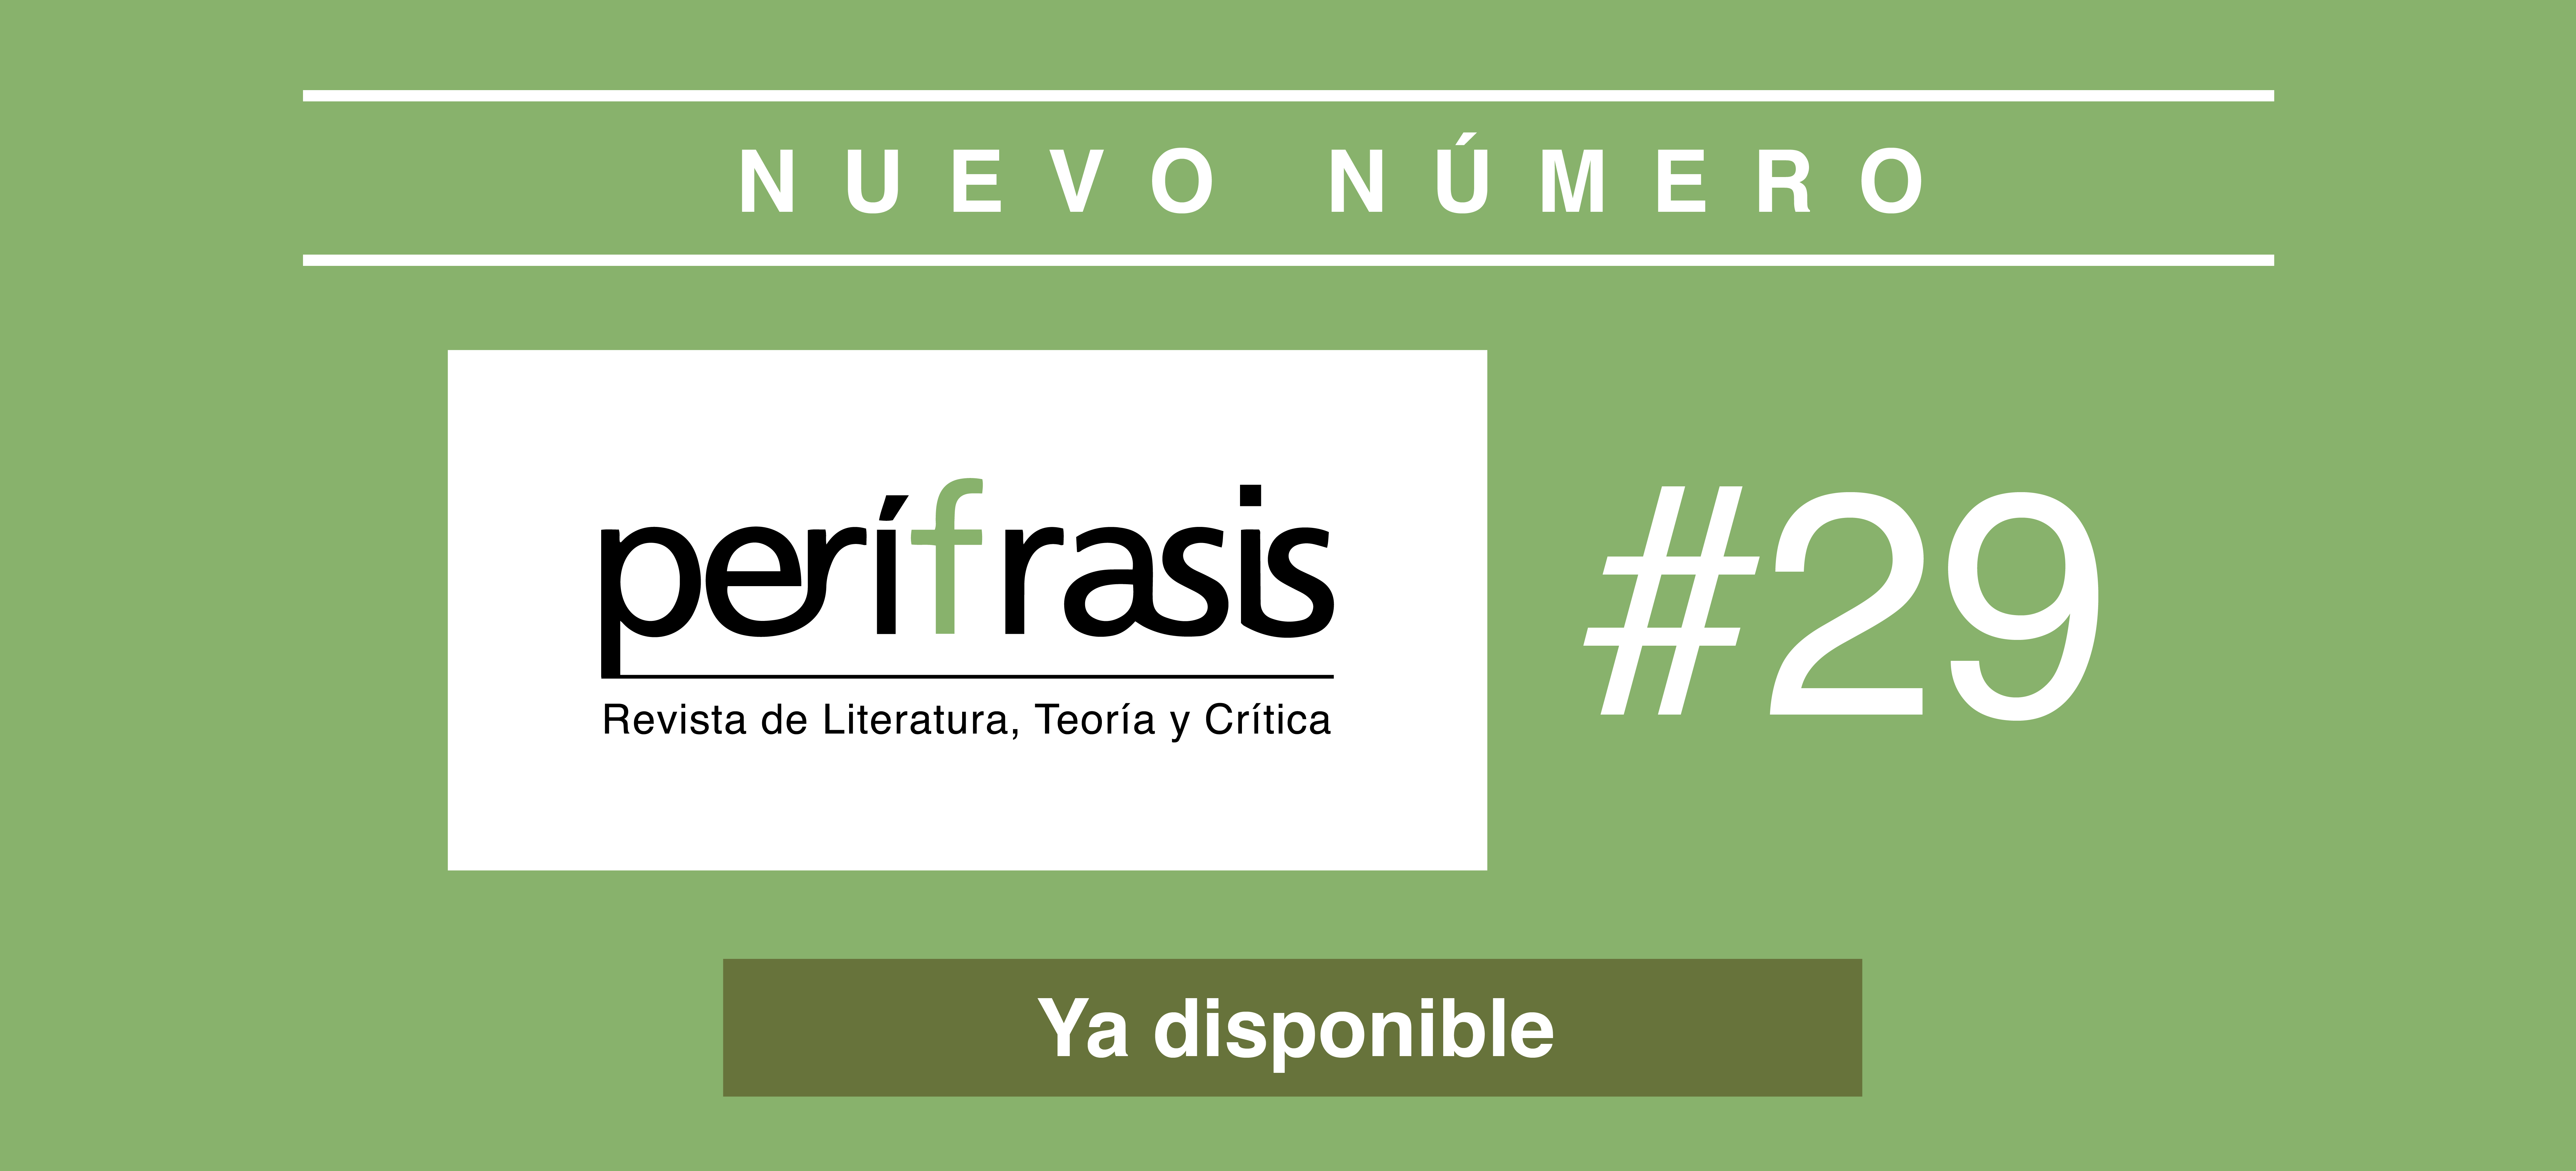 Perífrasis. Revista de Literatura, Teoría y Crítica lanza su número 29